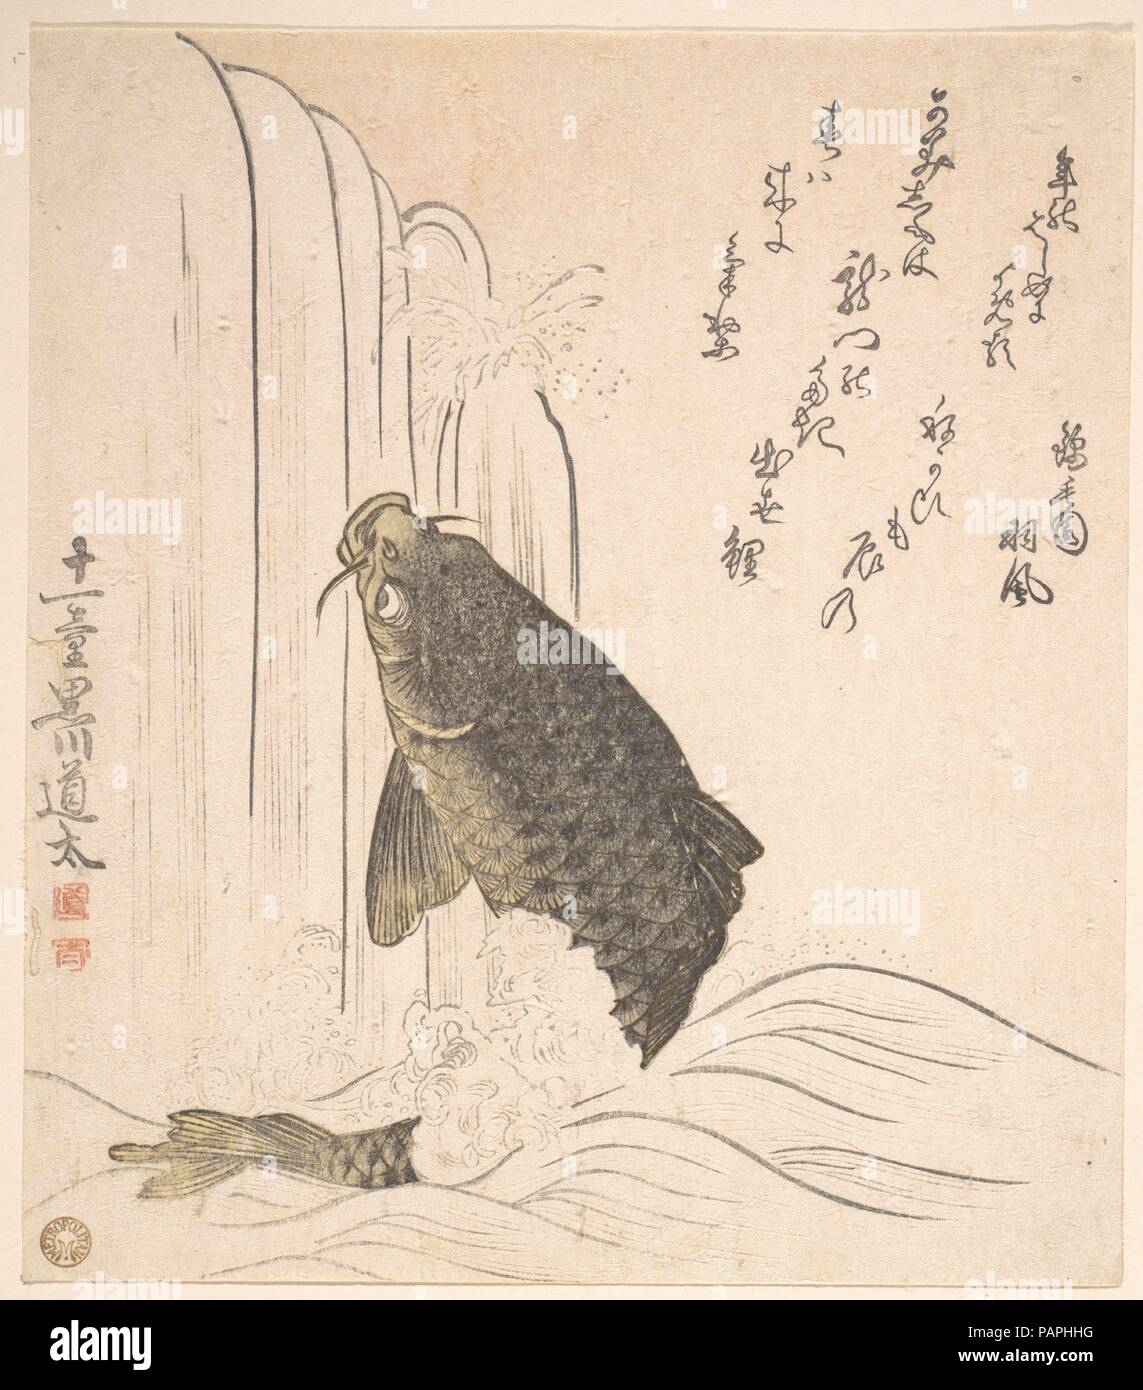 Essayer de carpes nager jusqu'à une cascade. Artiste : Kurokawa Michita (Japonais, actif au début du 19ème siècle). Culture : le Japon. Dimensions : 8 1/16 x 7 1/16 in. (20,5 x 17,9 cm). Date : 1820 probablement. Musée : Metropolitan Museum of Art, New York, USA. Banque D'Images